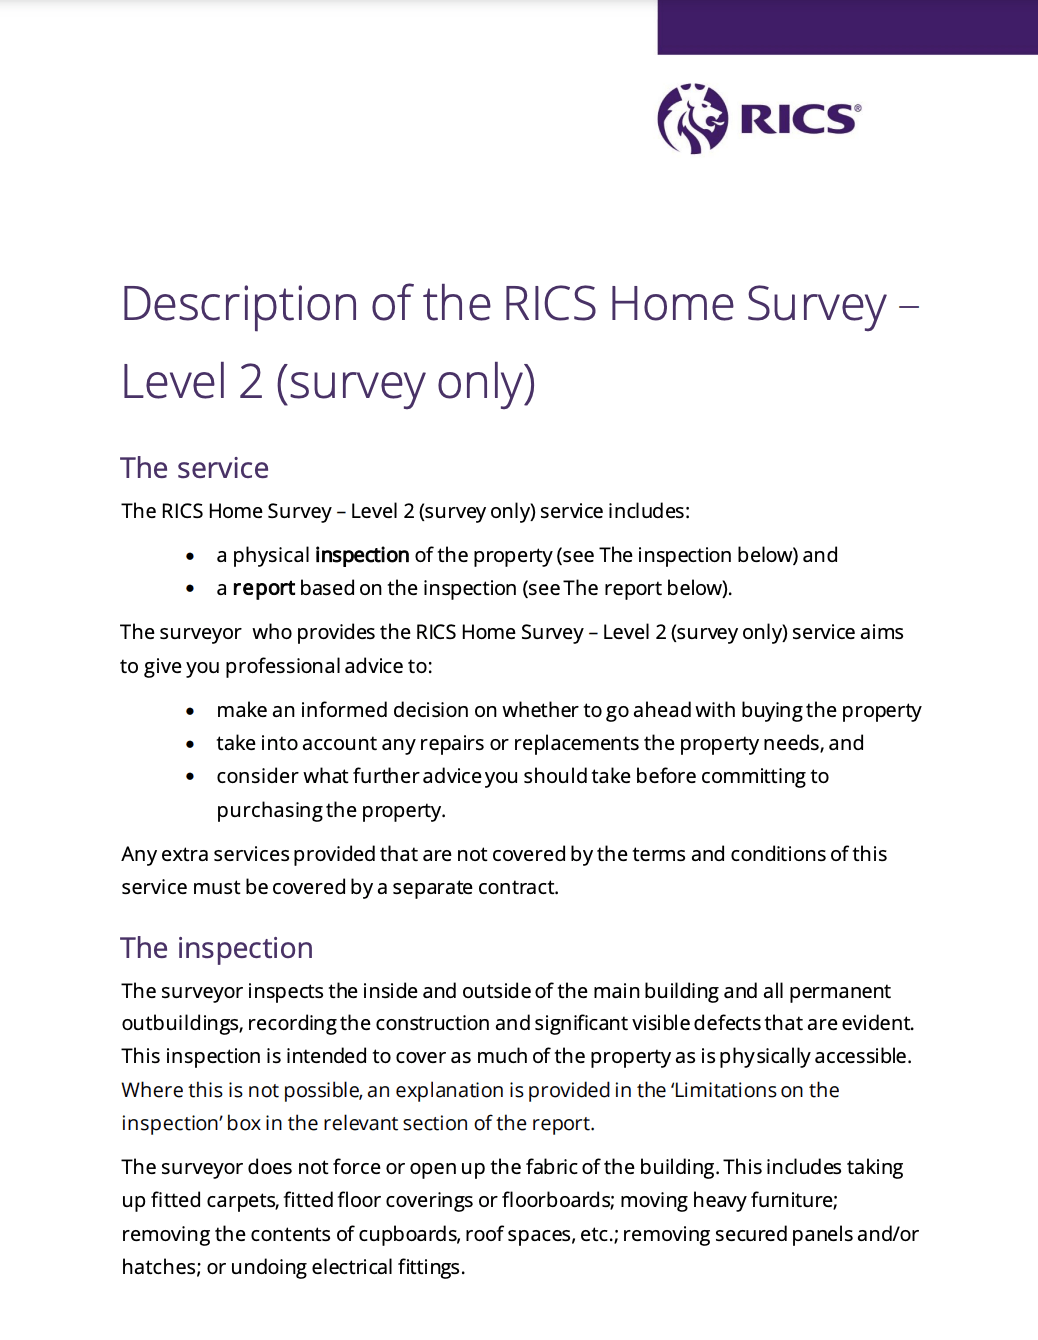 It is a description of the rics home survey level 2 survey only.